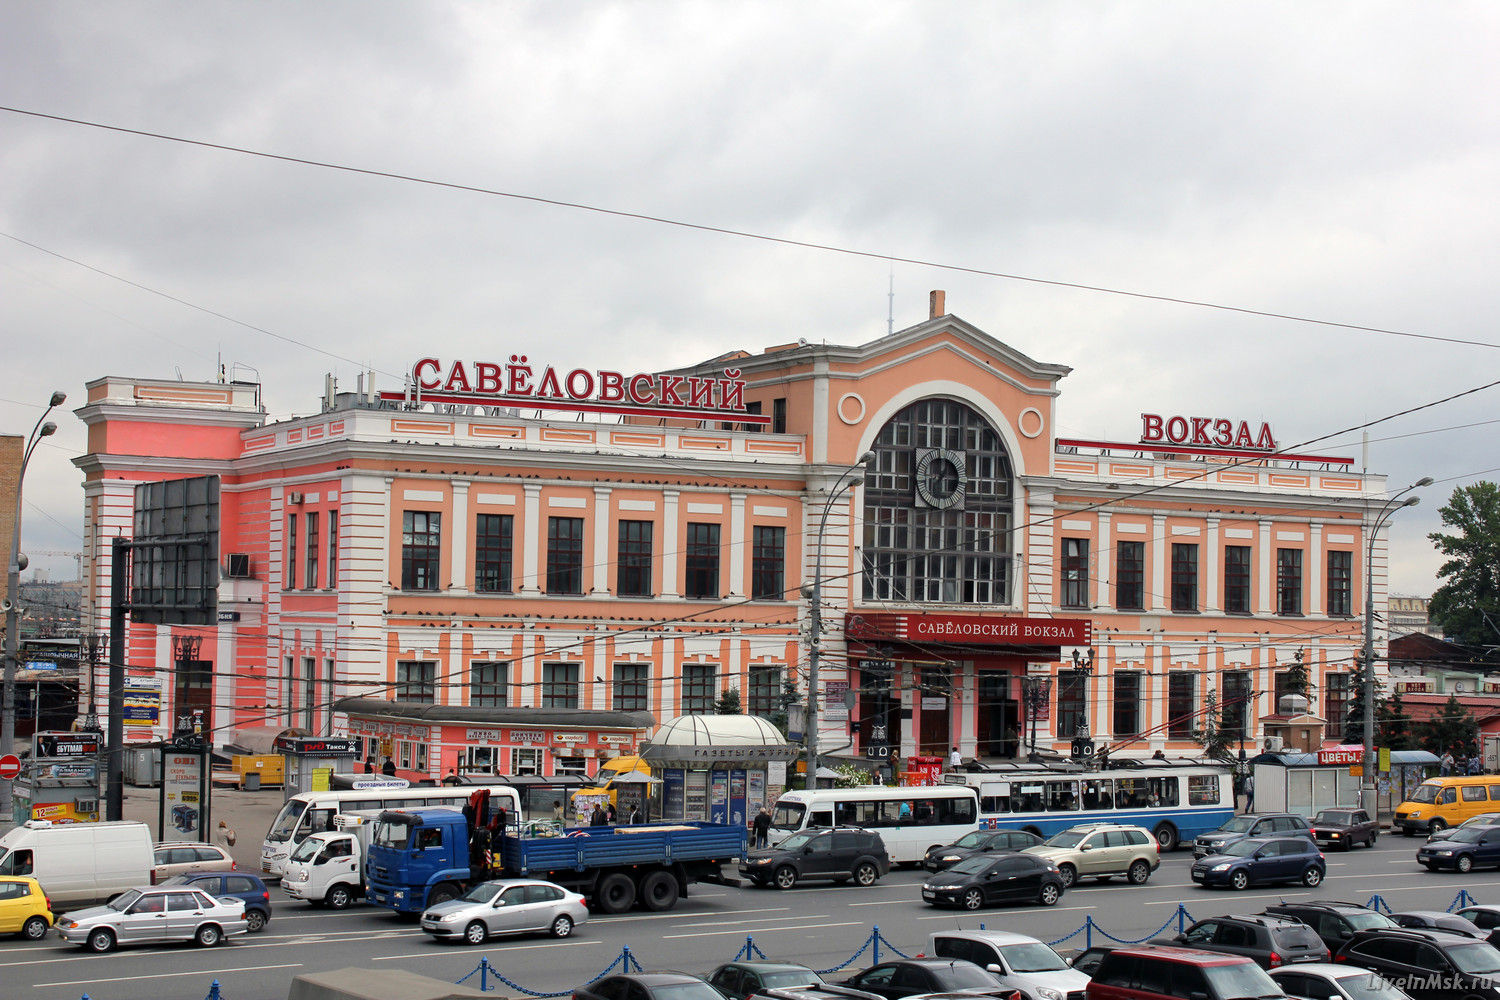 Савеловский вокзал, фото 2015 года